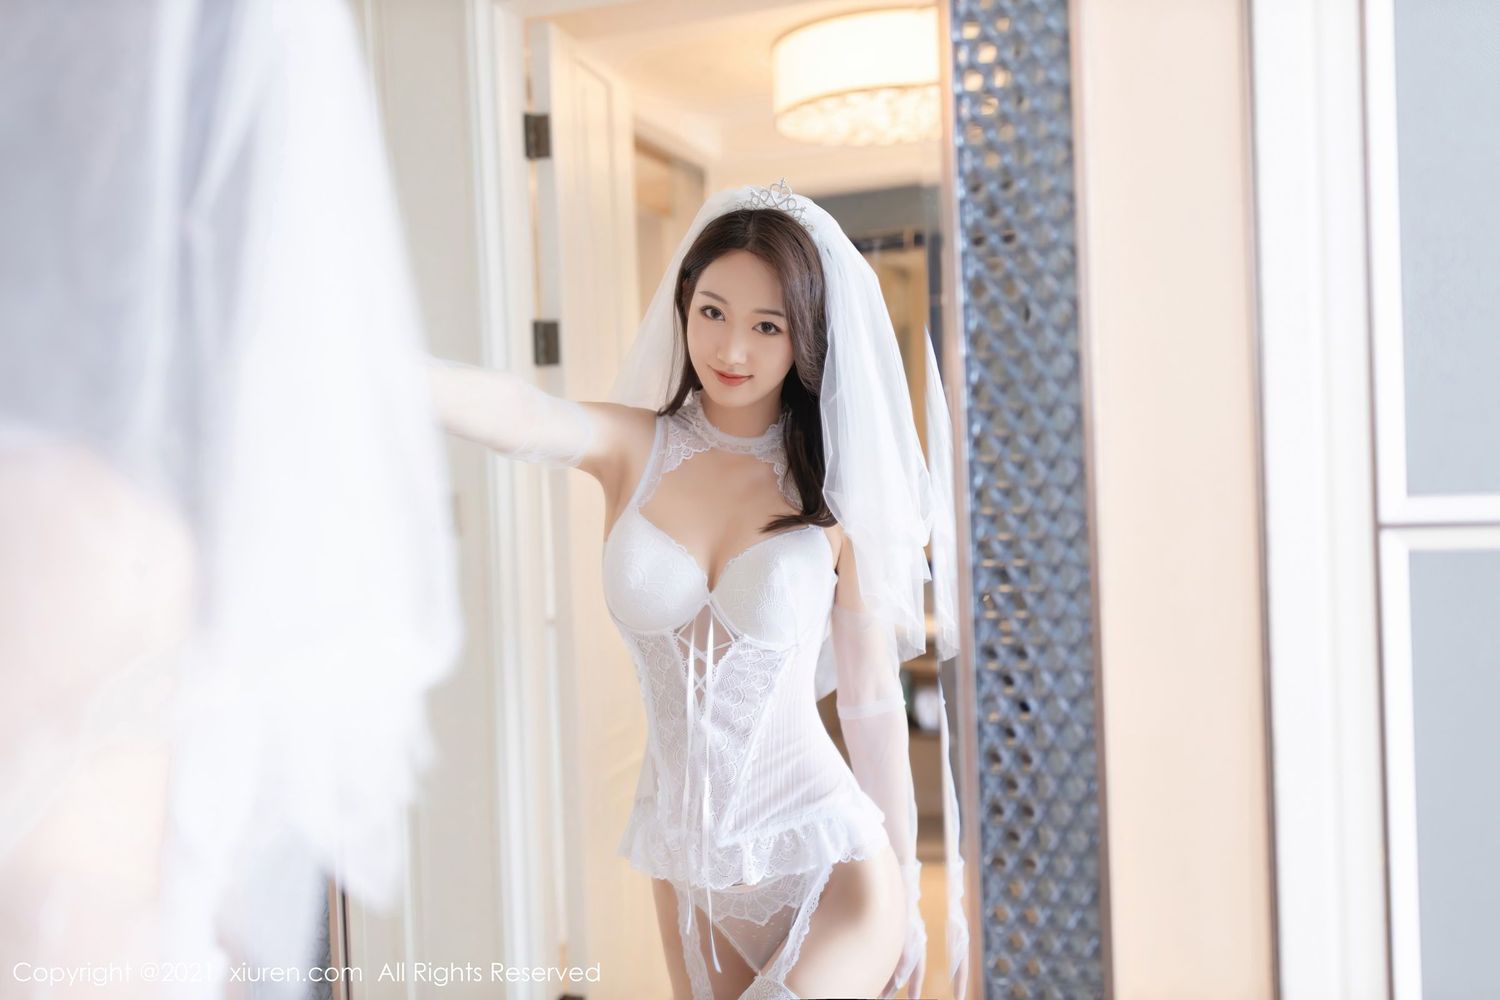 美女模特唐安琪 - 丝袜美腿白色蕾丝婚纱主题写真